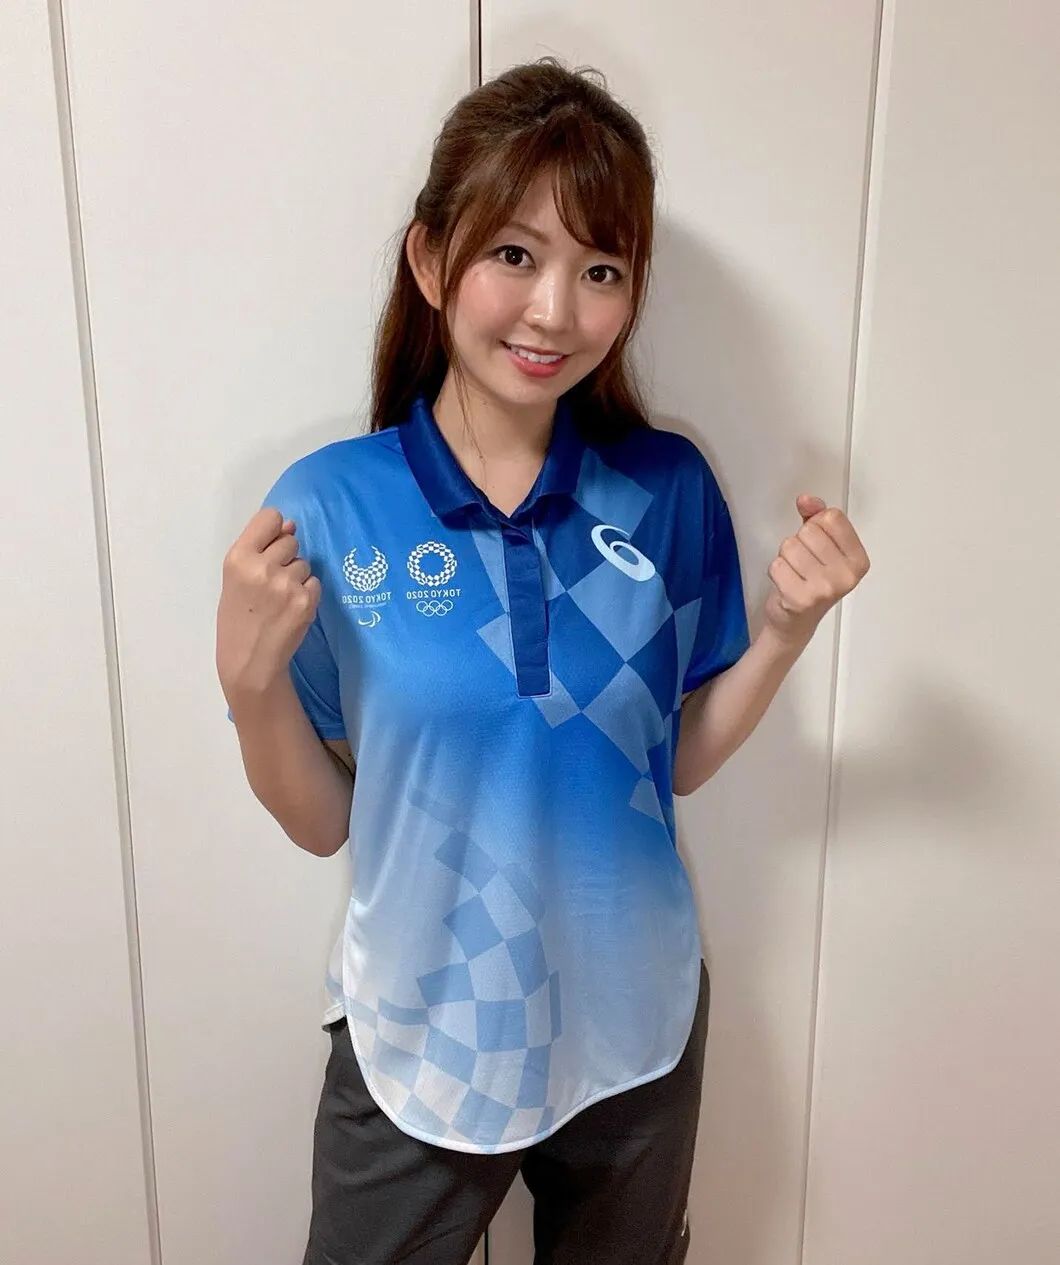 一位东京奥运会志愿者在试穿制服。(图/Maika Kuroda)